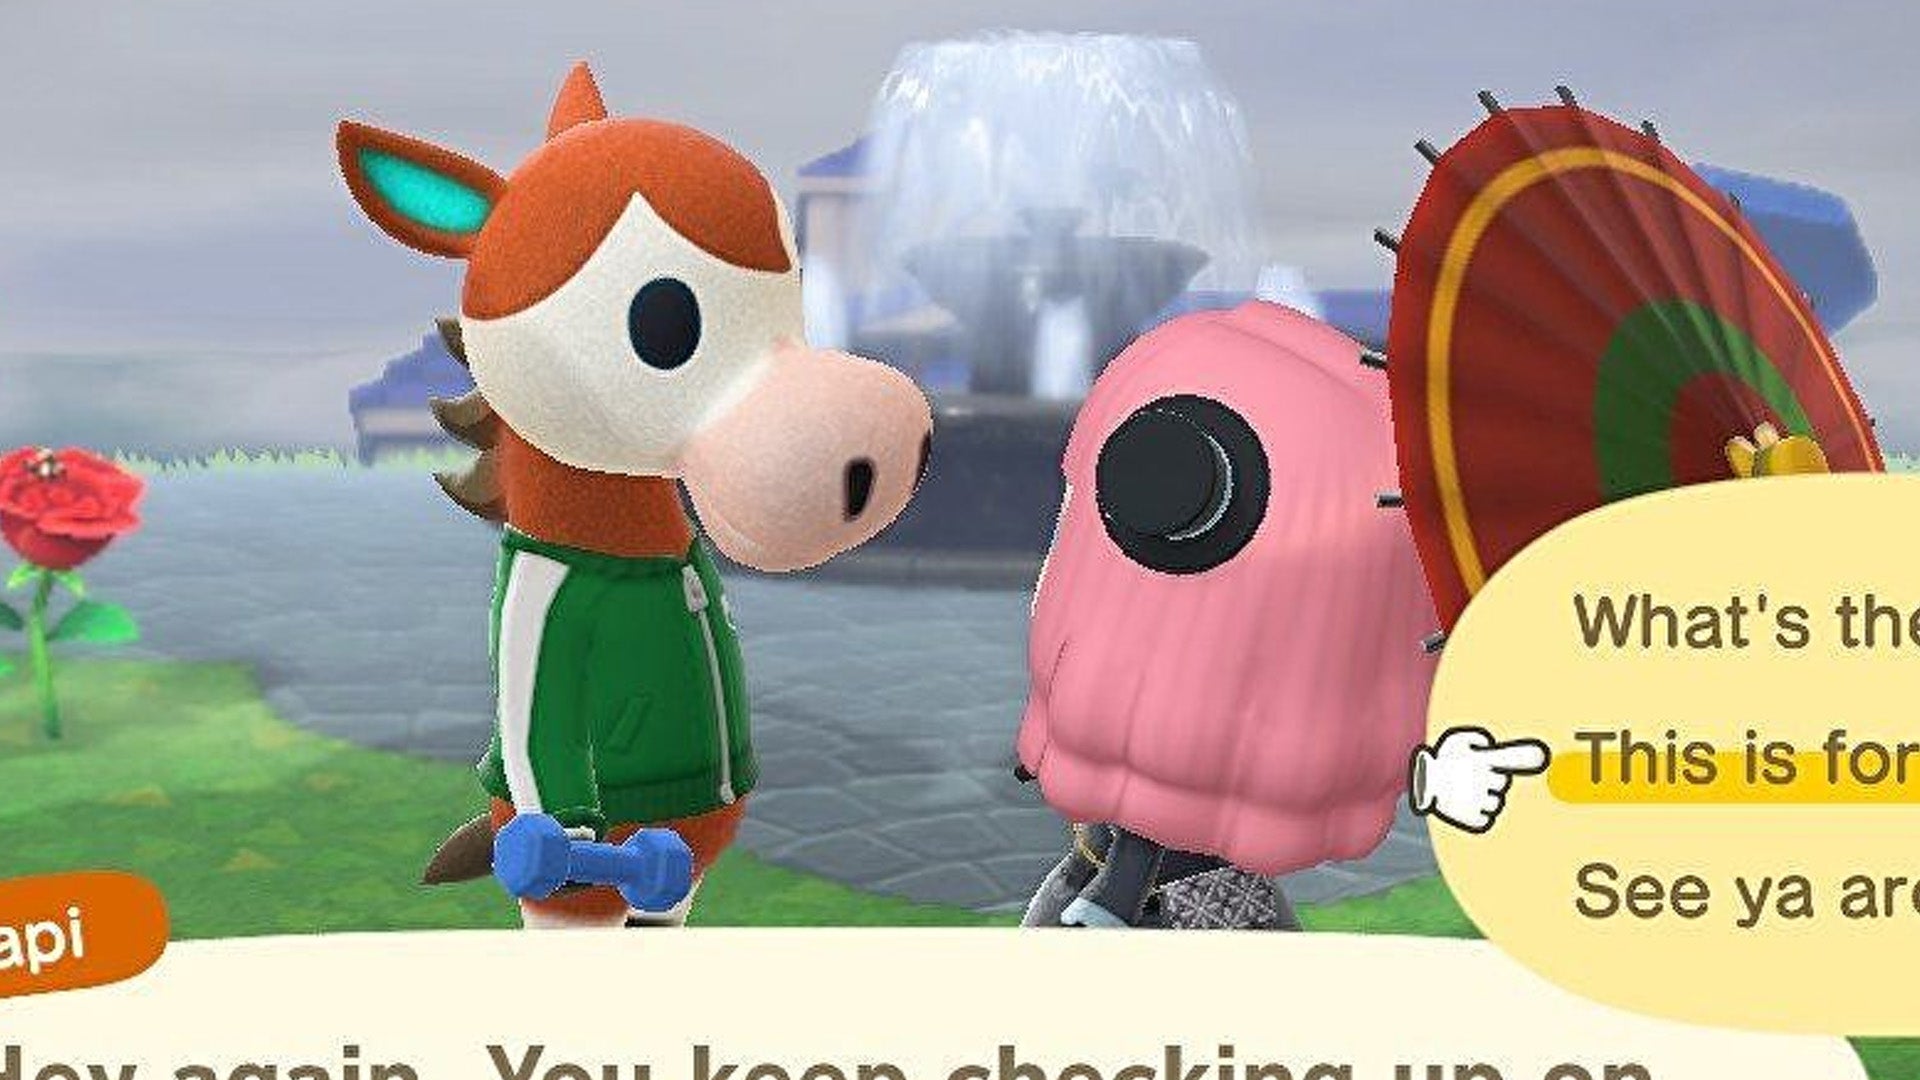 Obrazki dla Animal Crossing - jak zaprzyjaźnić się z postacią: Best Friends w New Horizons